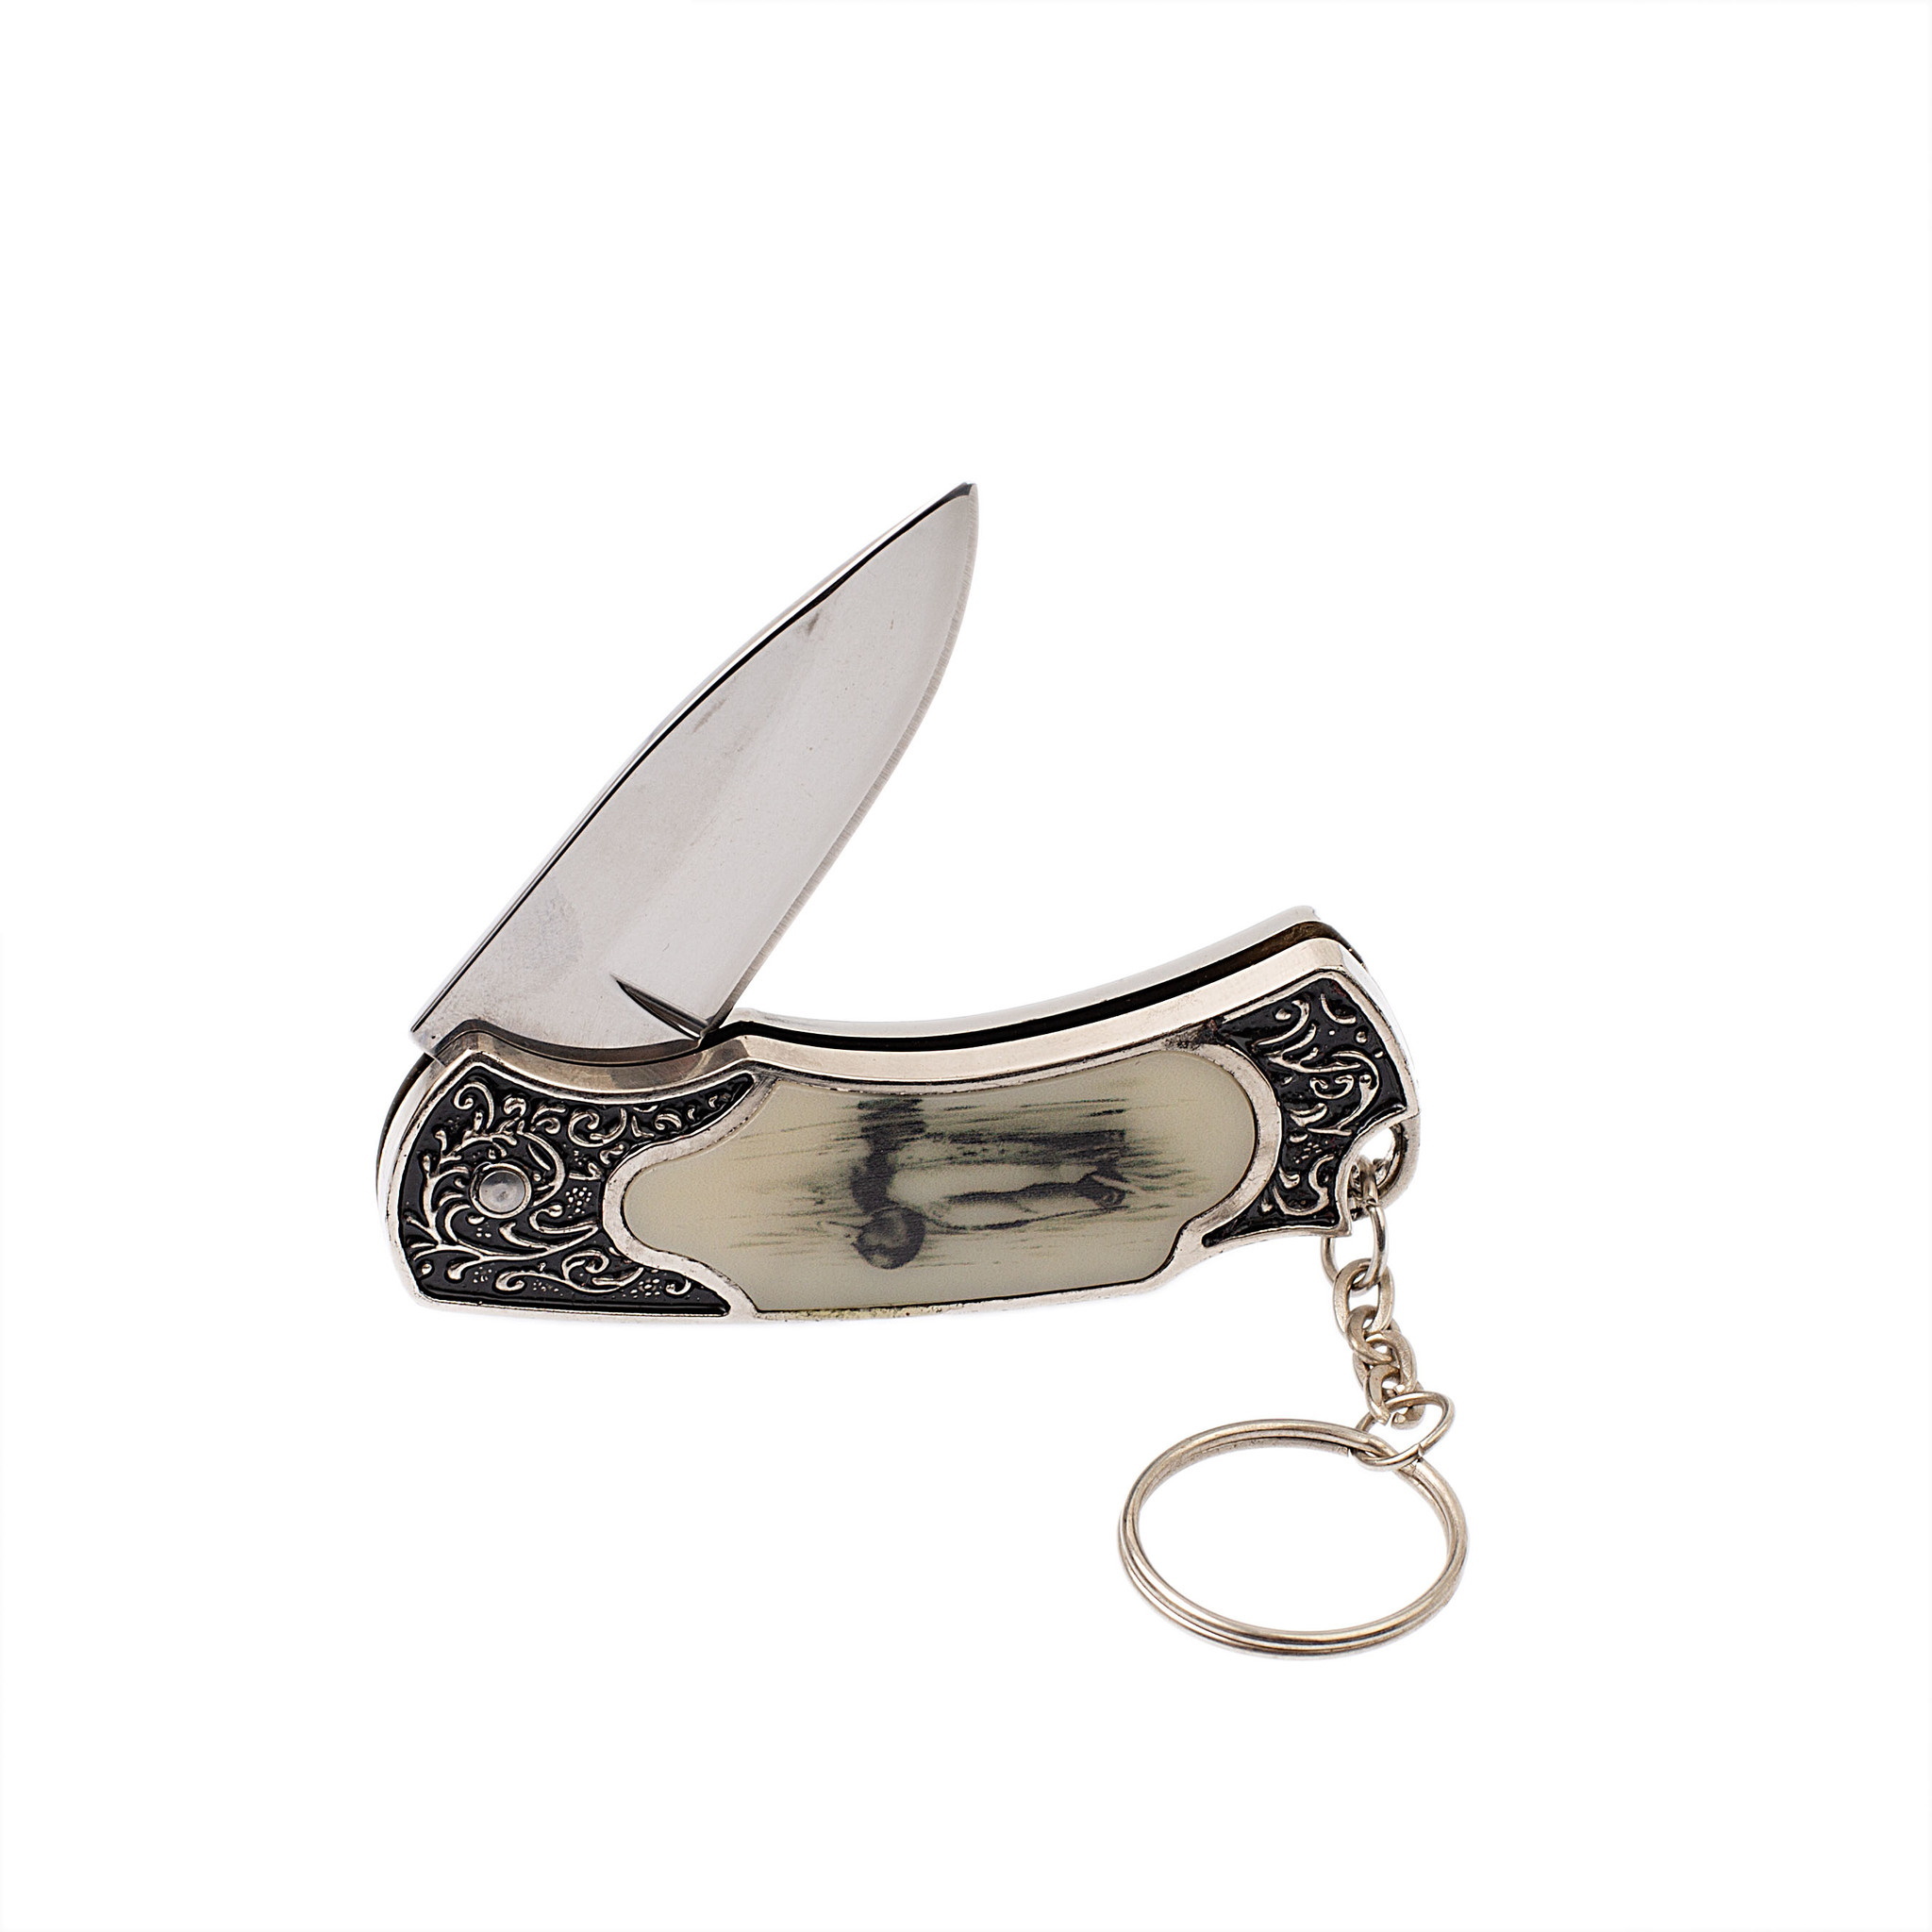  нож-брелок Борей-2, 128 мм, ME05-2 по цене 330.0 руб. -  .